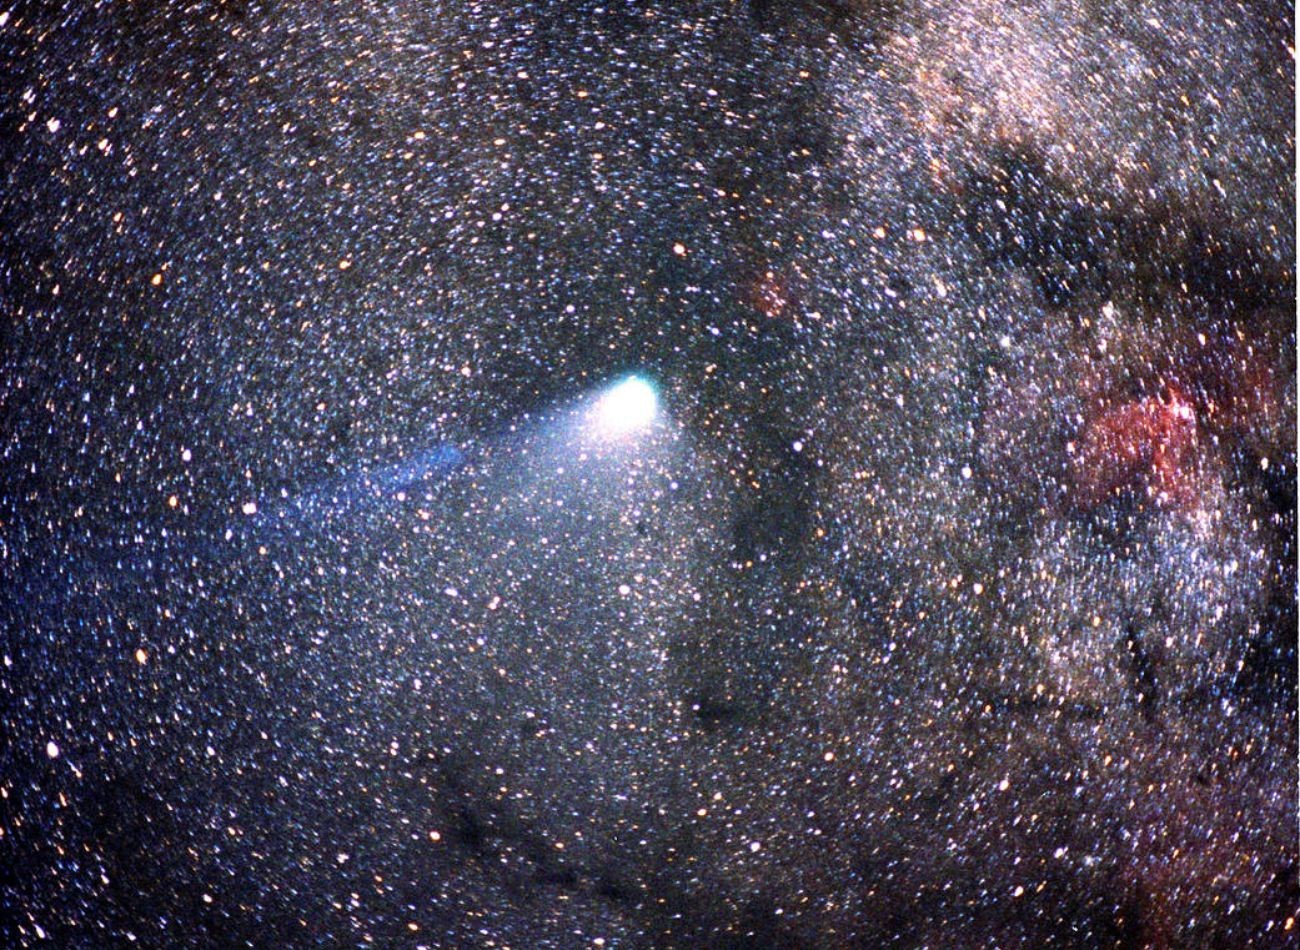 1986-ban készítették a fényképet, amikor a Halley-üstökös a legközelebb volt a Naphoz. FORRÁS; NASA.GOV